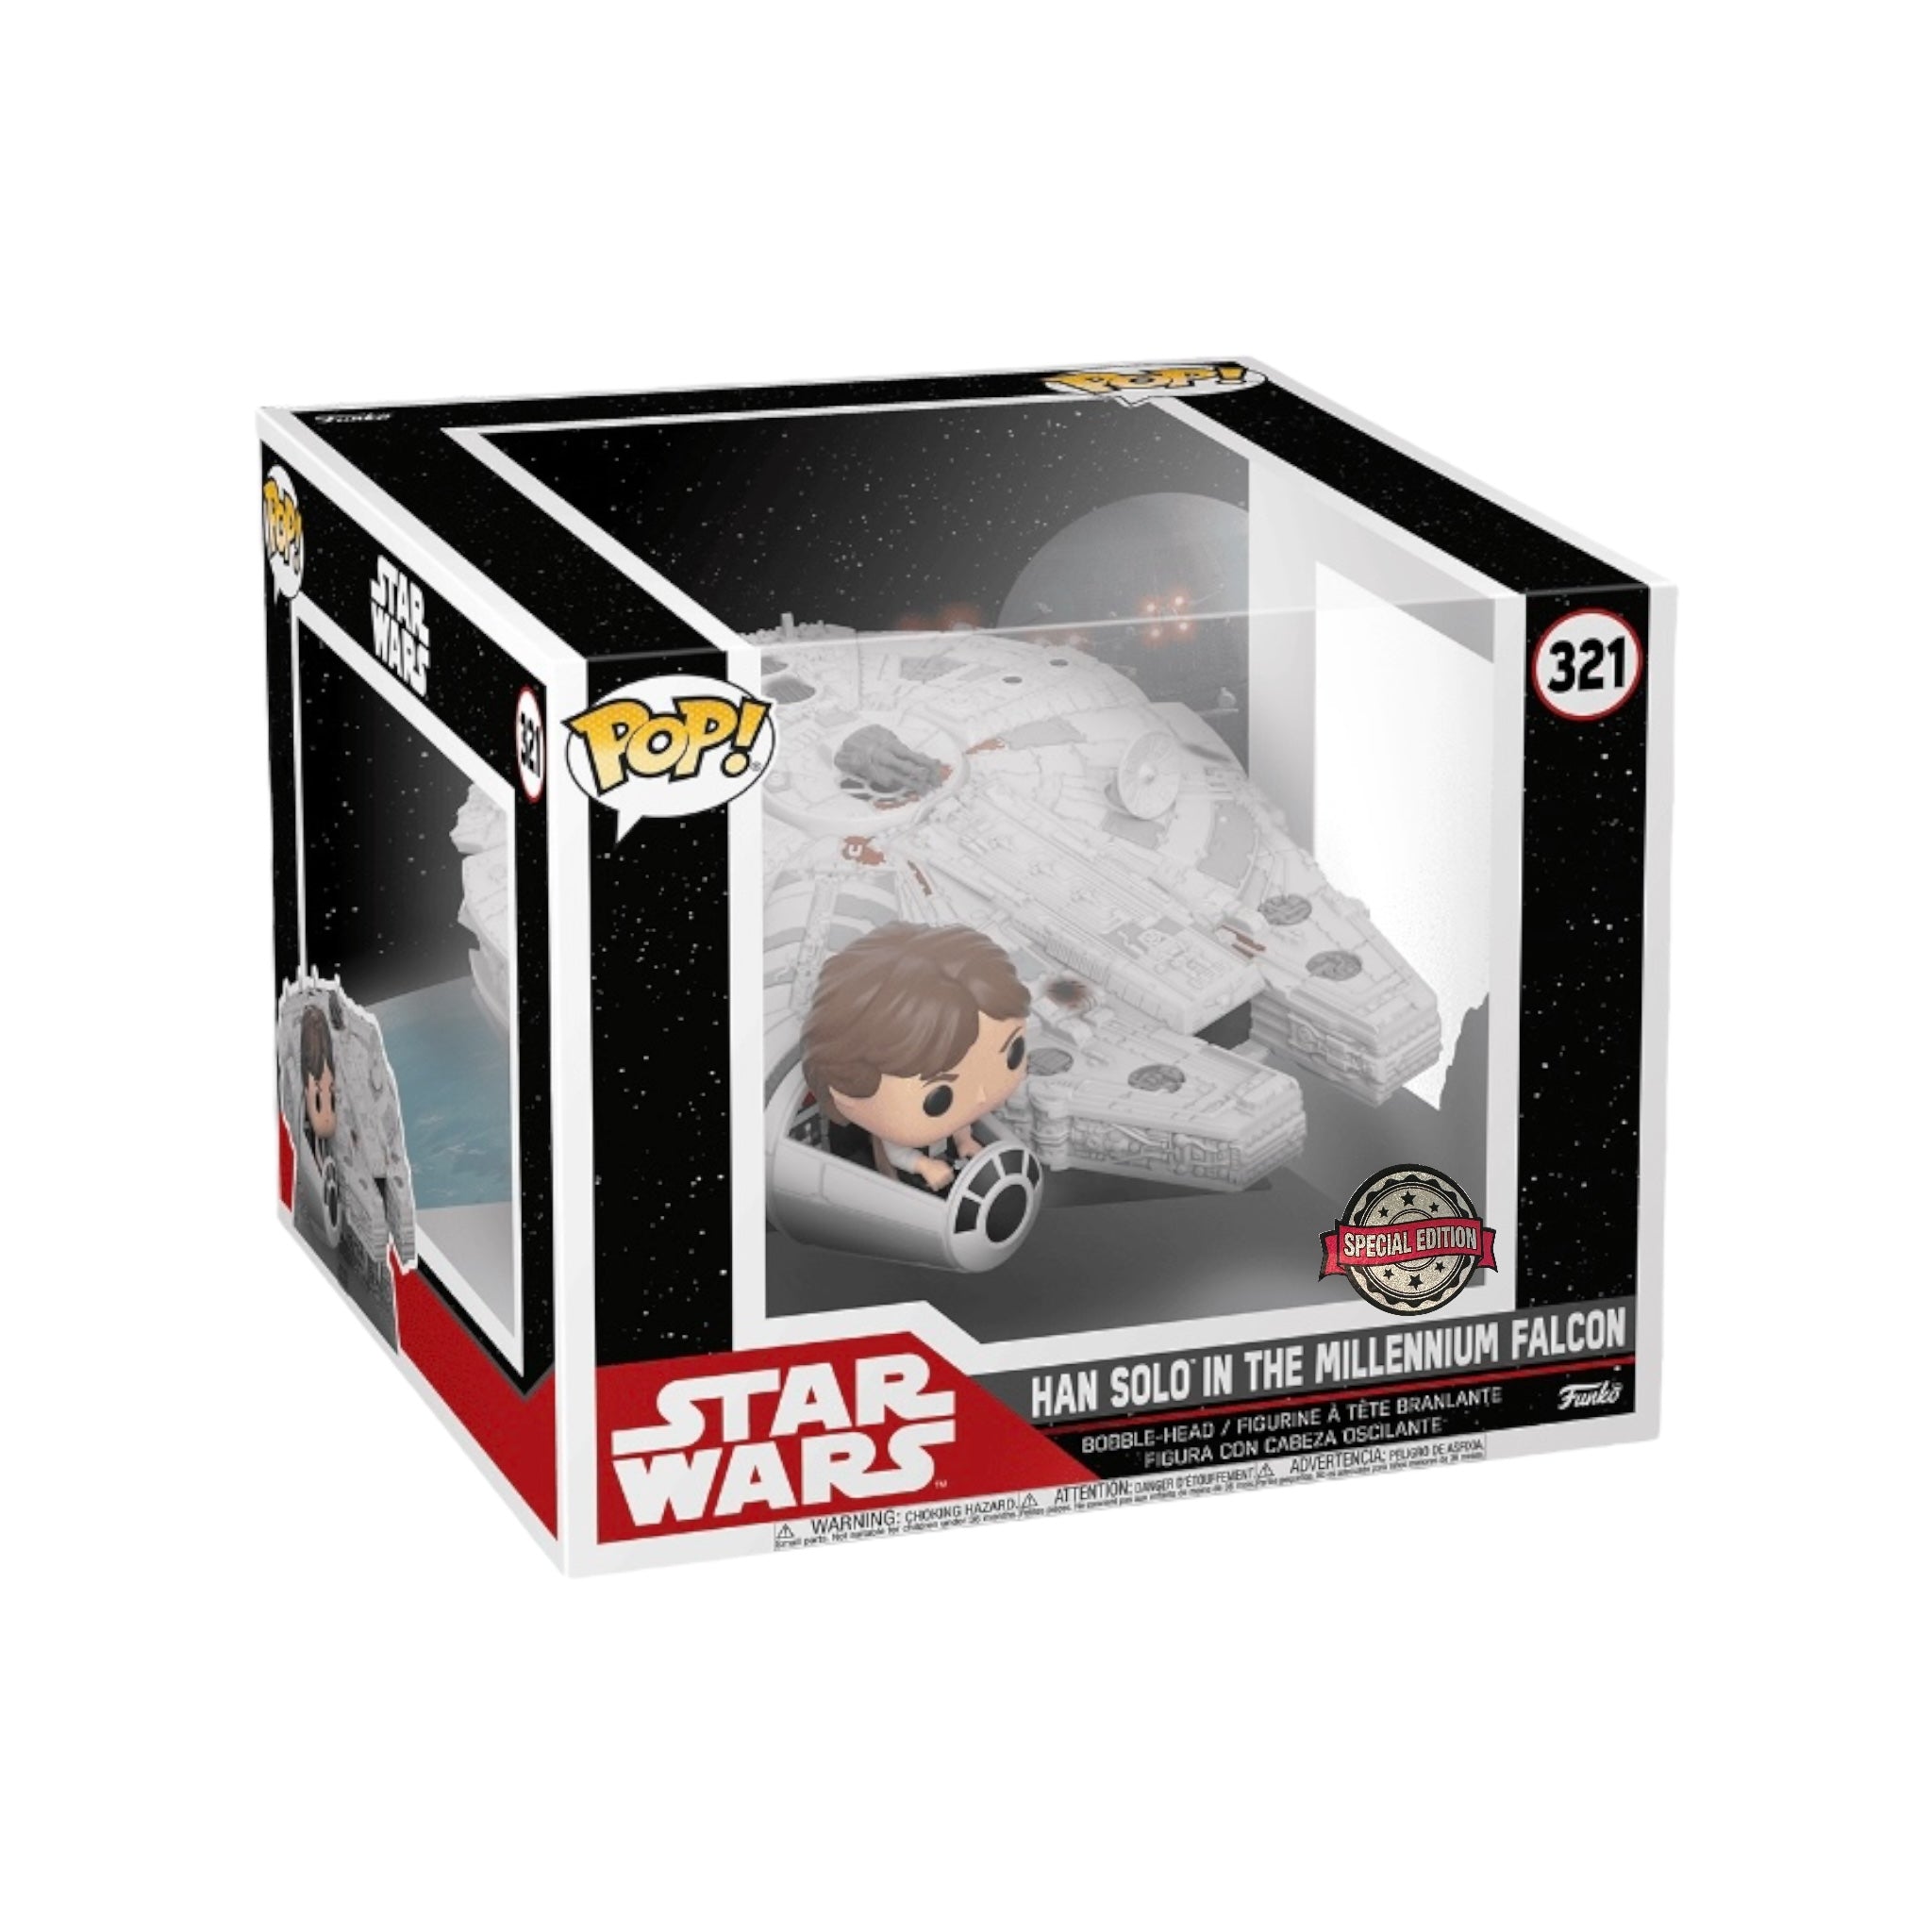 Han Solo in The Millennium Falcon #321 Funko Pop! - Star Wars - Special Edition - Condition 8.75/10